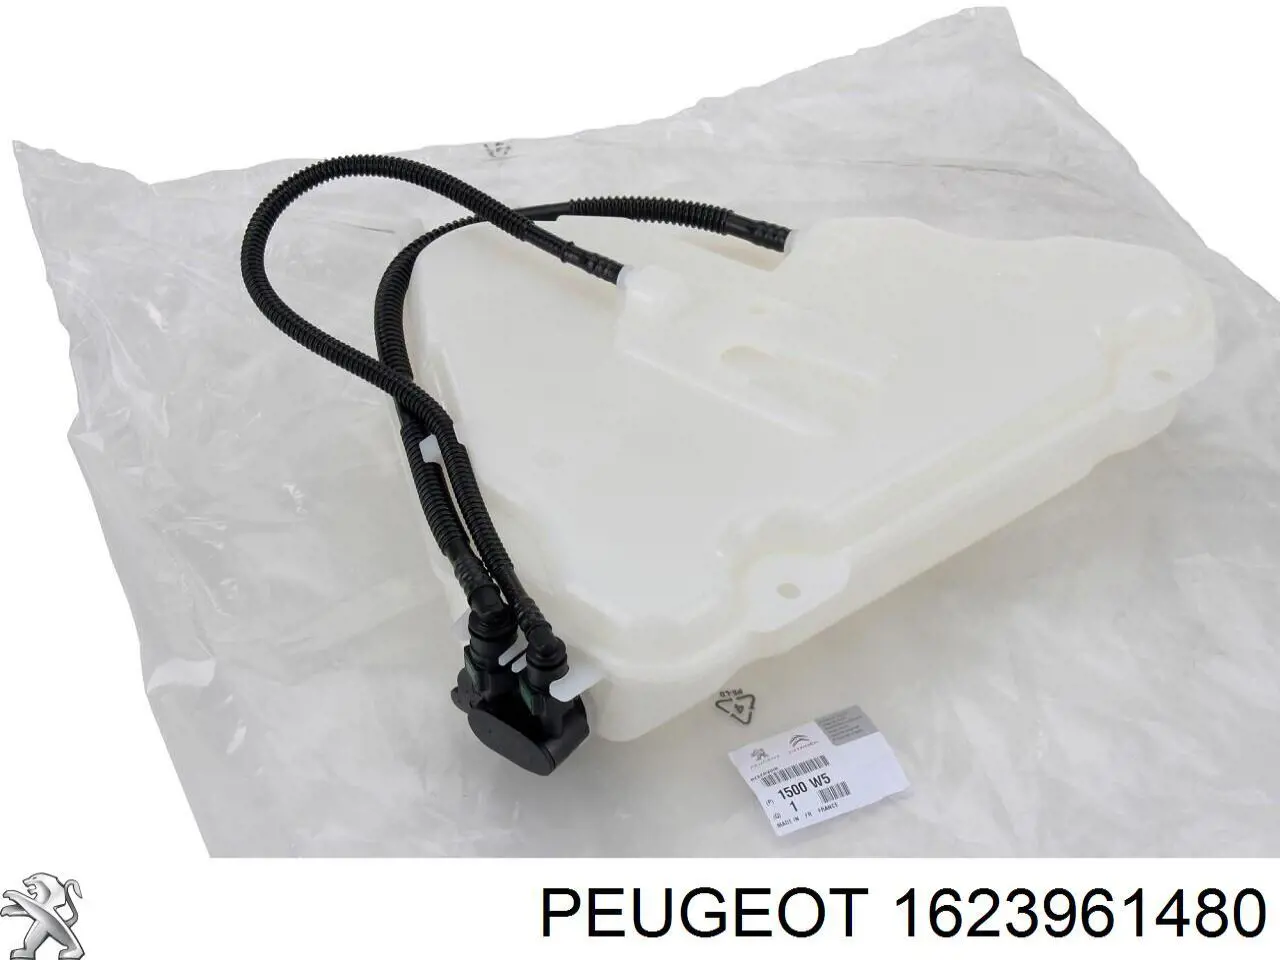 1623961480 Peugeot/Citroen liquido para filtros negros hollin